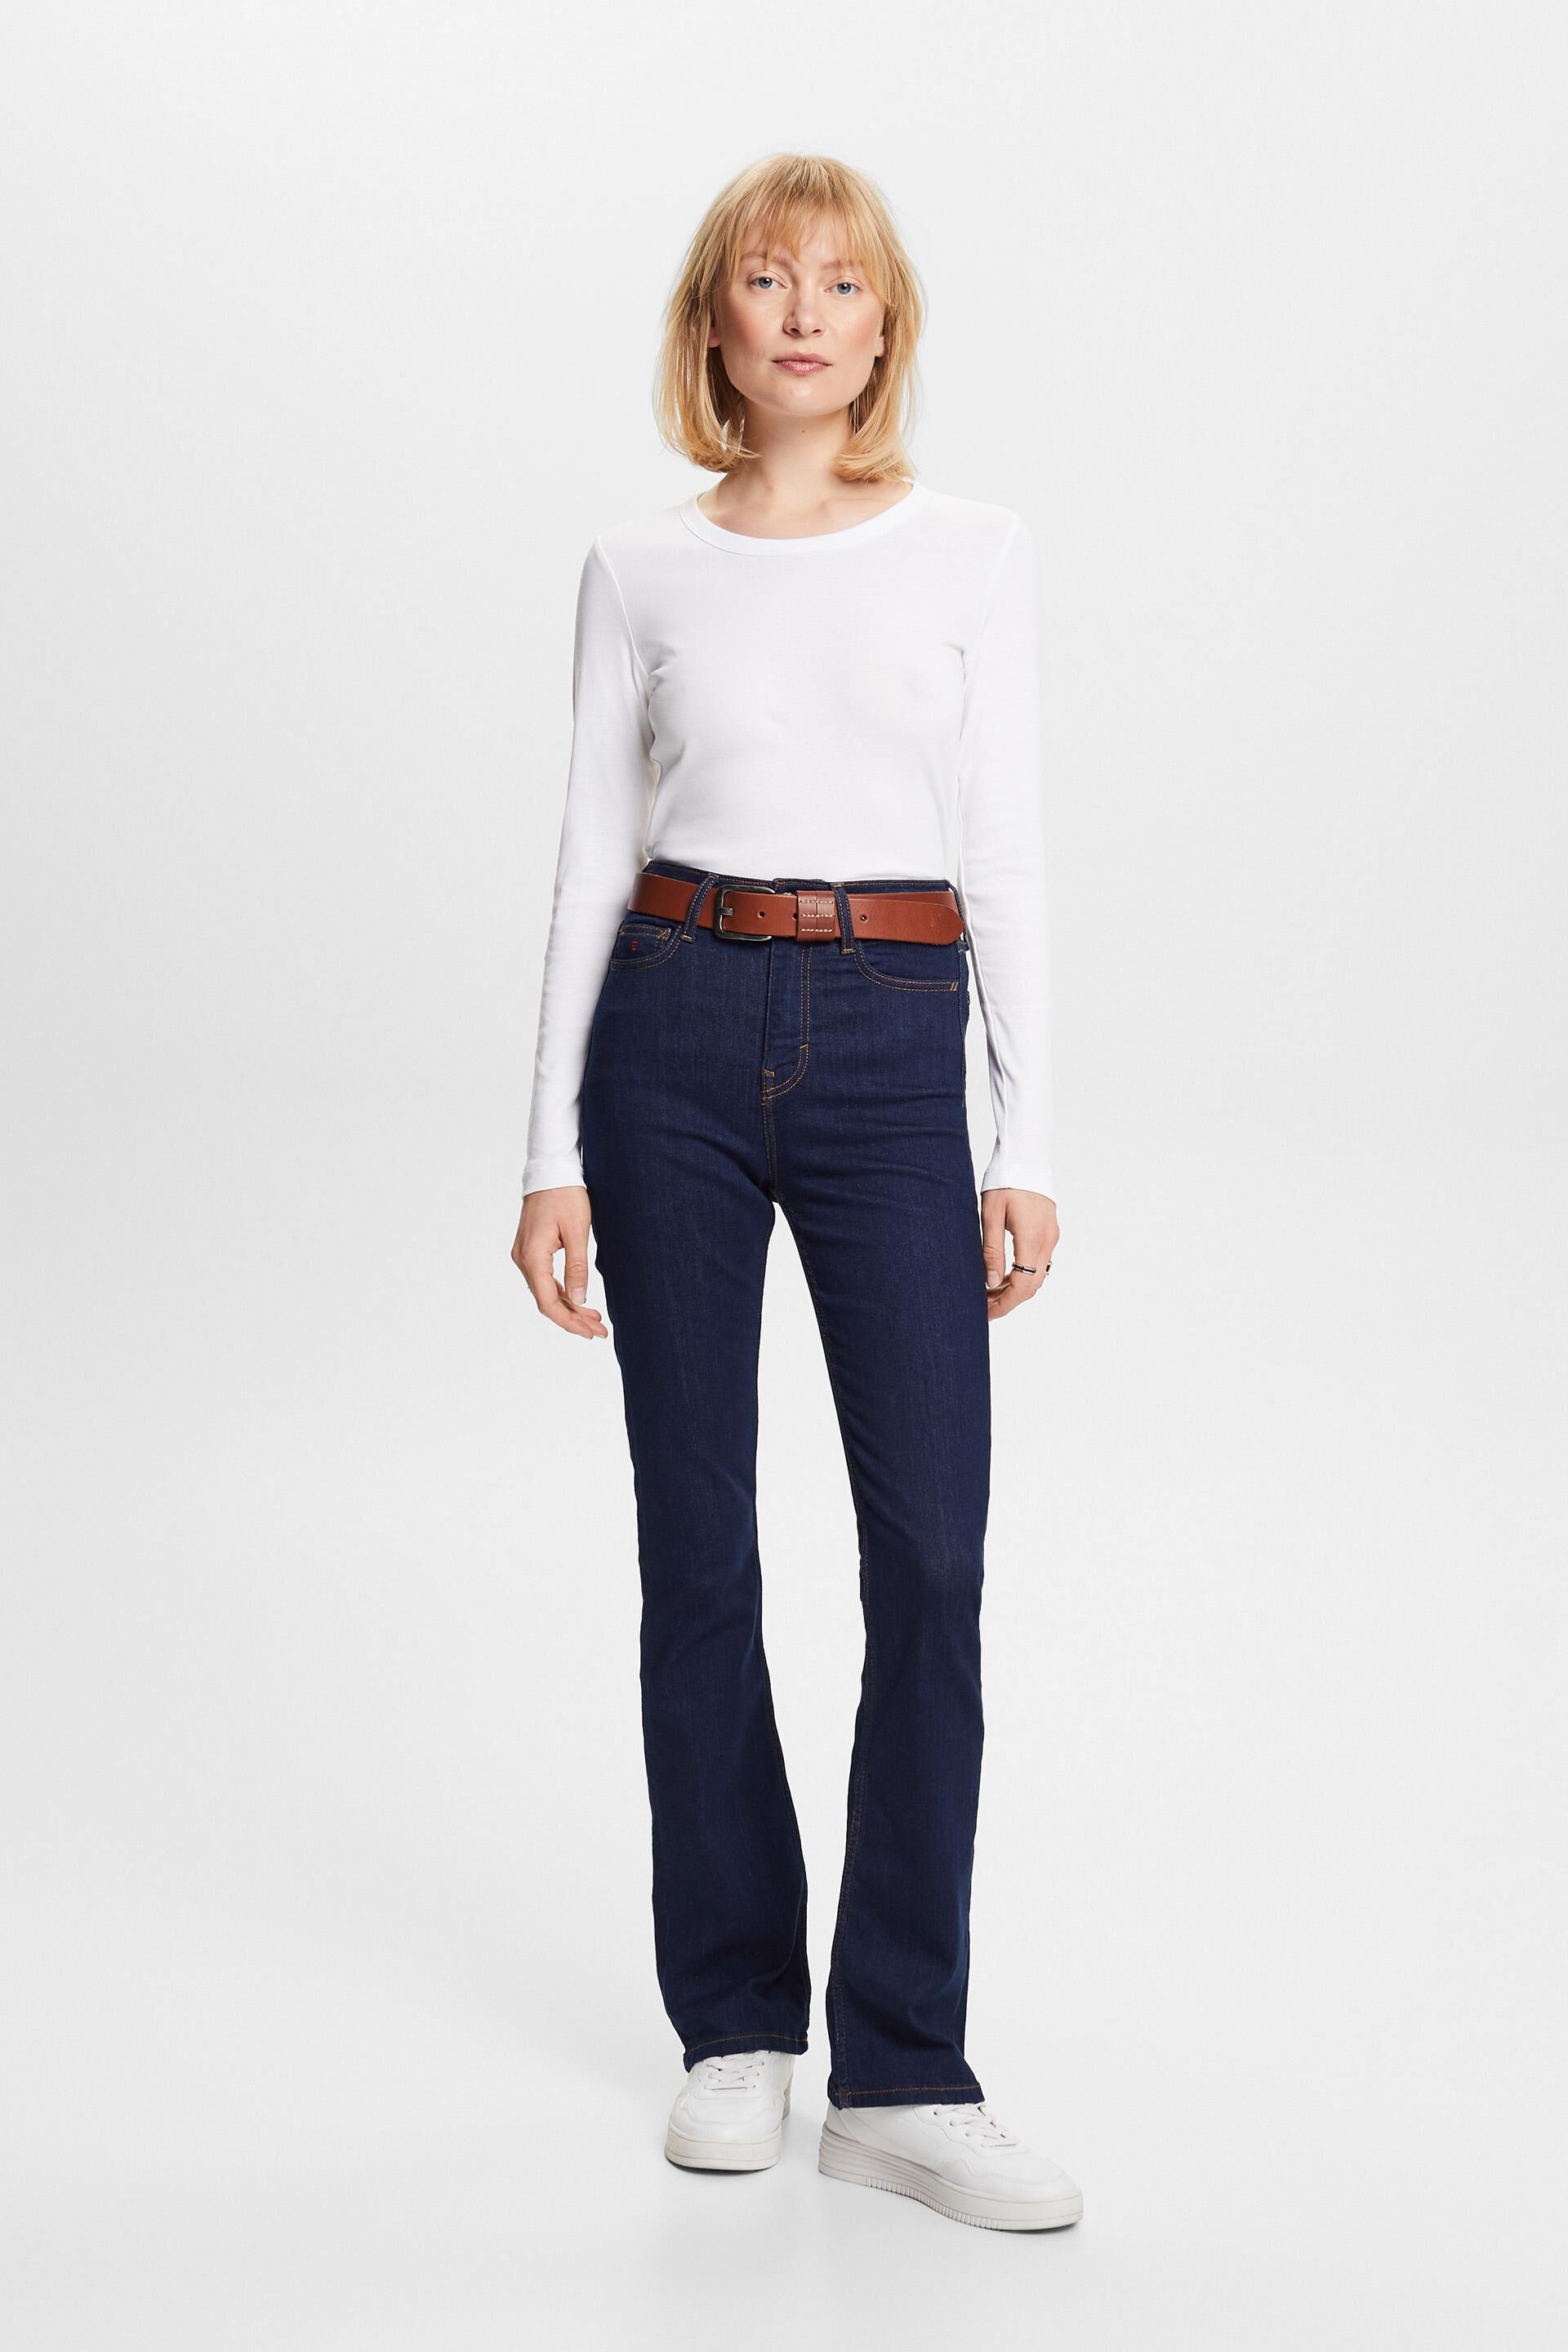 Esprit Damen Hochwertige Bootcut-Jeans hohem Bund mit